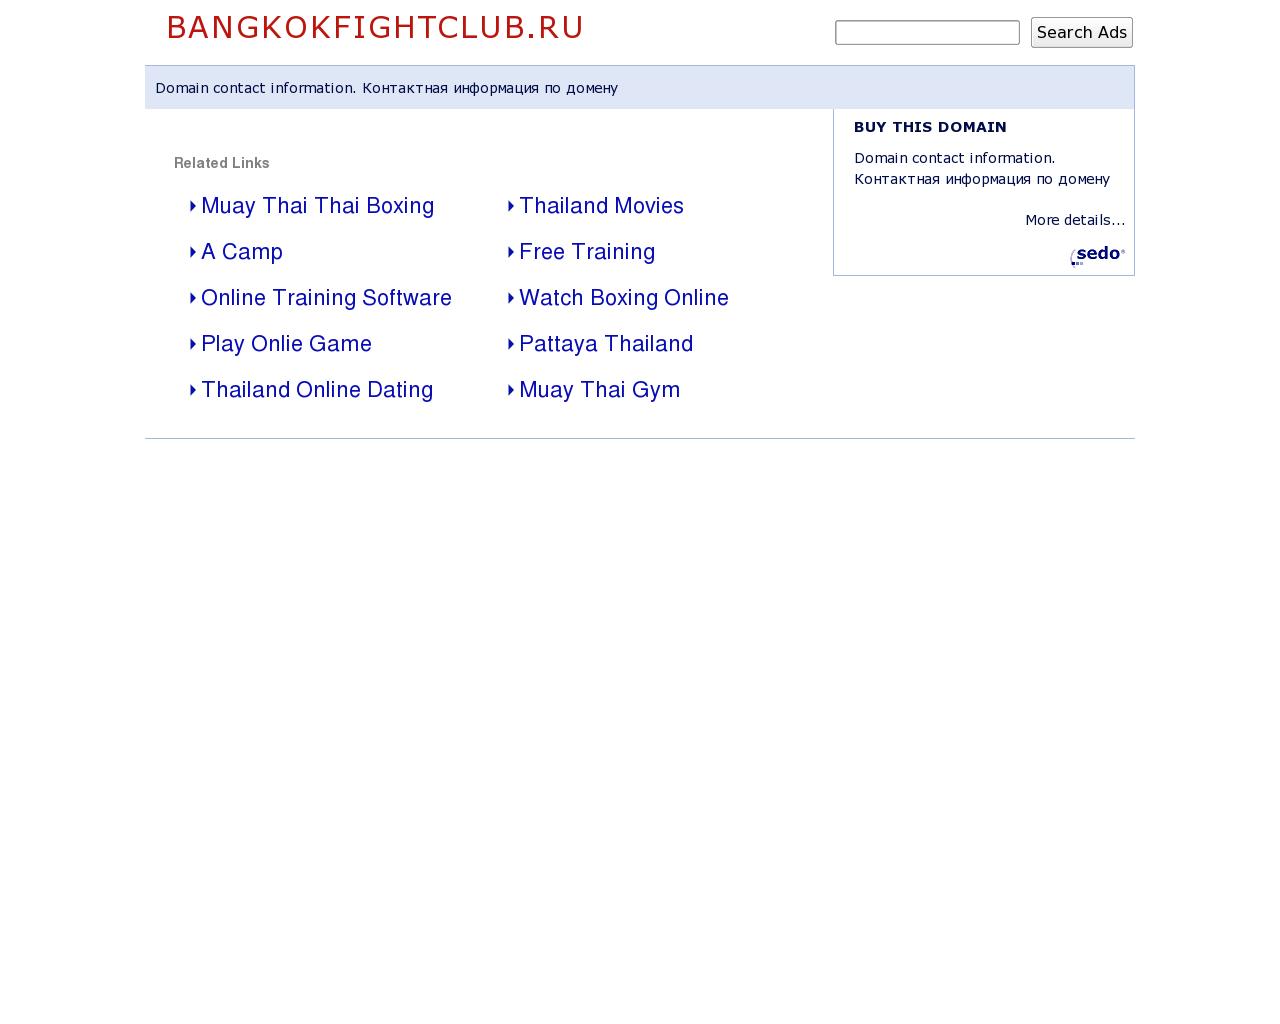 Изображение сайта bangkokfightclub.ru в разрешении 1280x1024